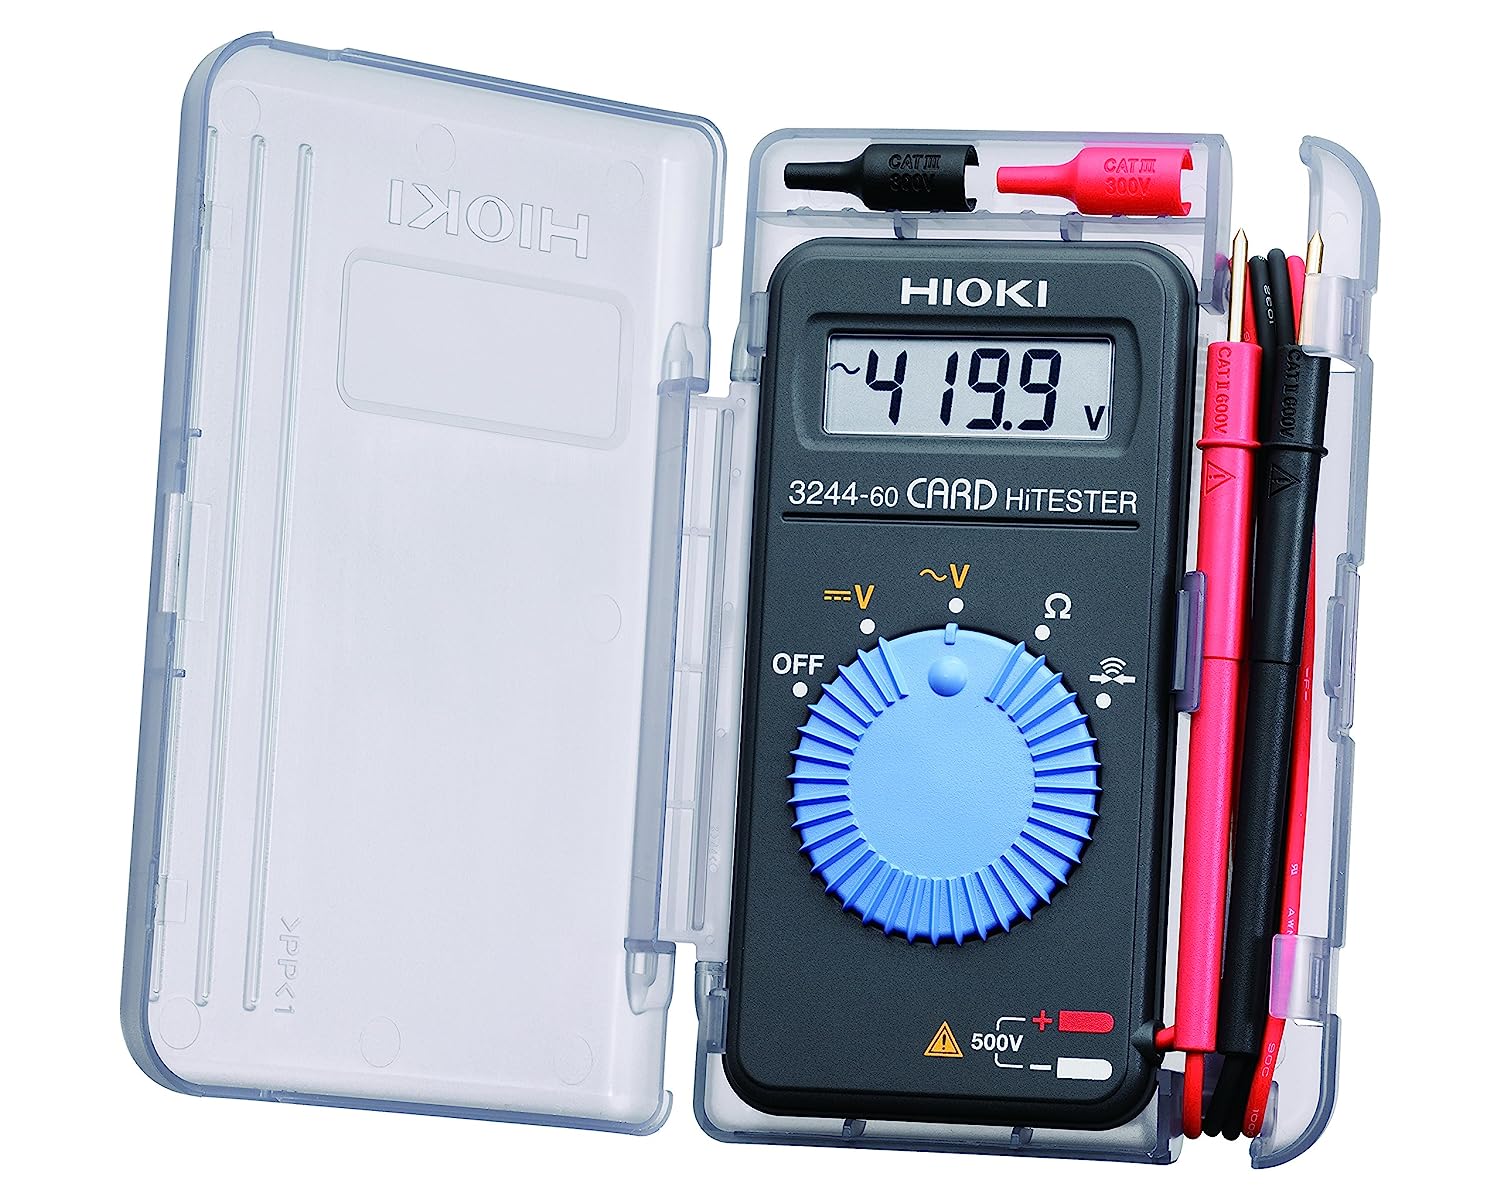 Hioki 3244-60 Card HiTester and Digital Multimeter, [...]